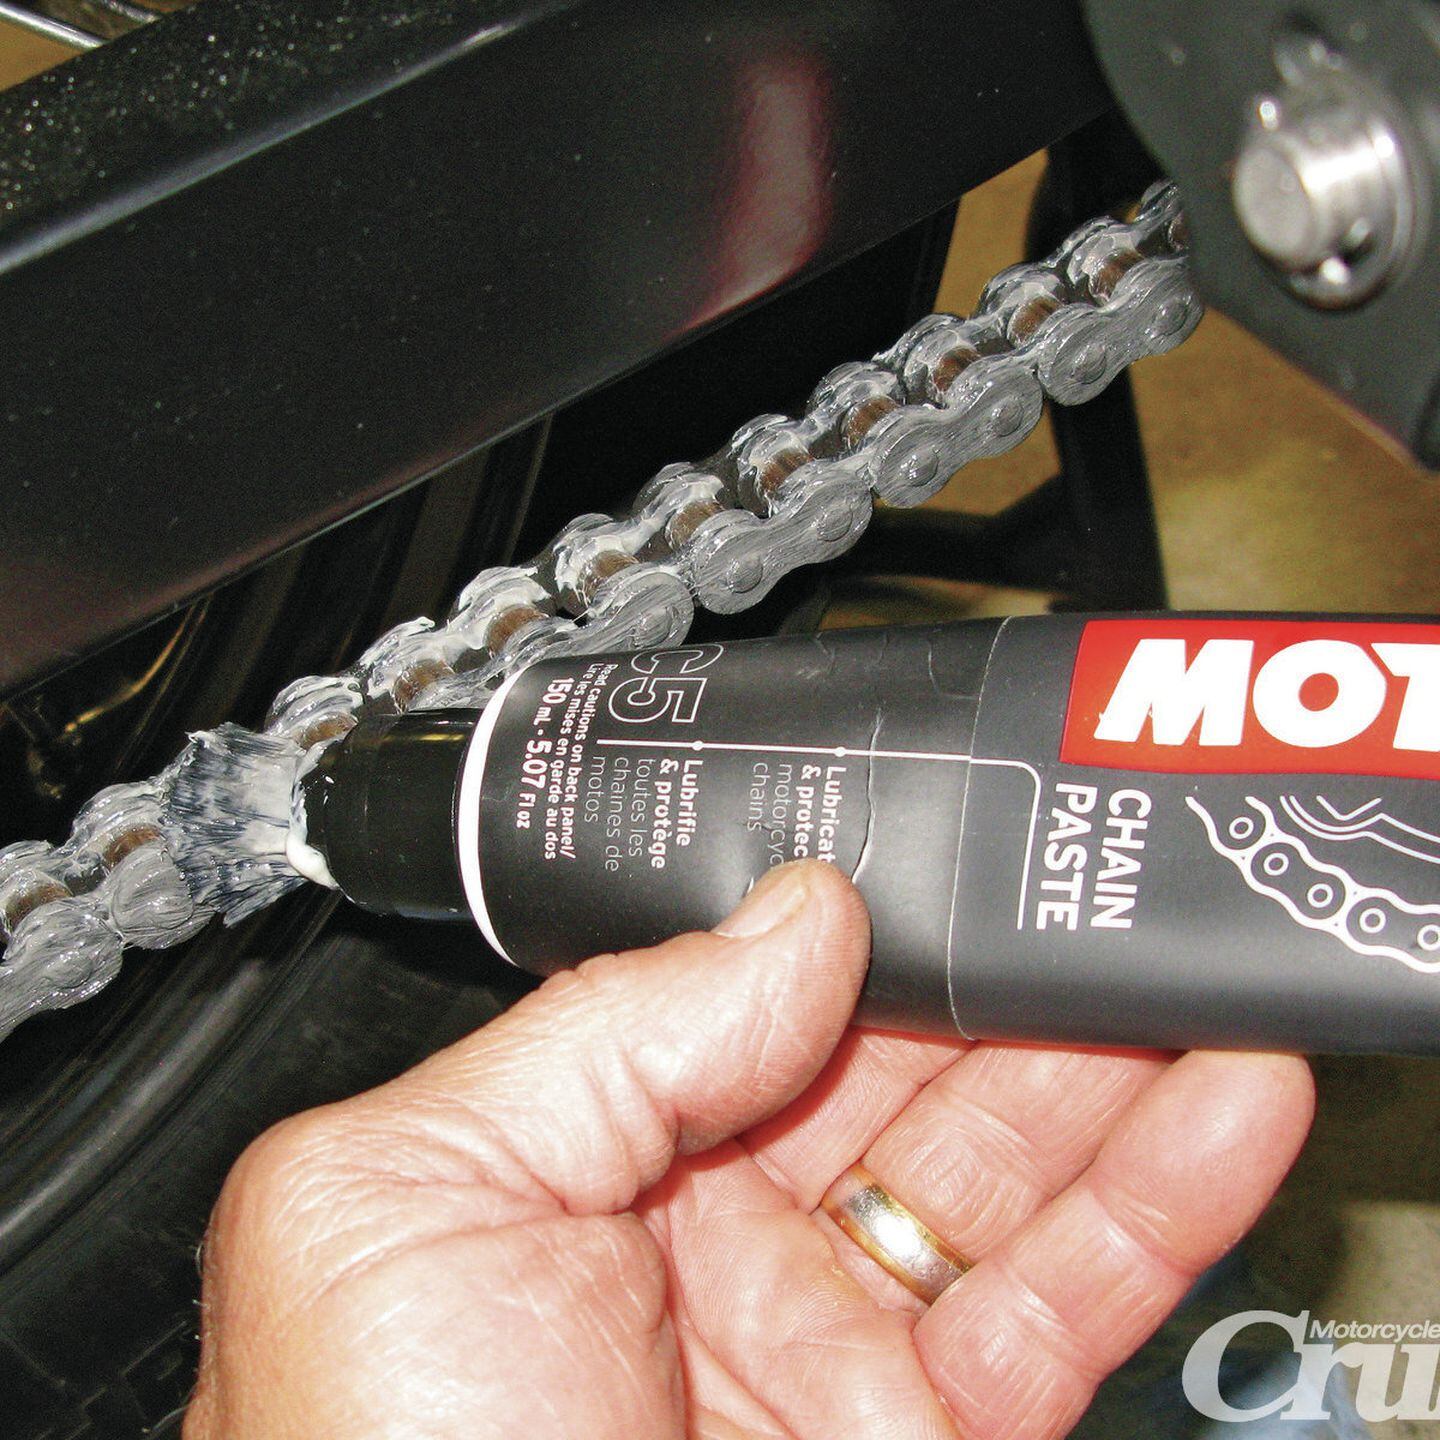 Можно ли смазывать цепь силиконовой смазкой. Motul c5 Chain paste. Motul c5 смазка для цепи мотоцикла. Смазка для цепи мотюль с5. Паста для смазки цепей Motul c5 Chain paste.